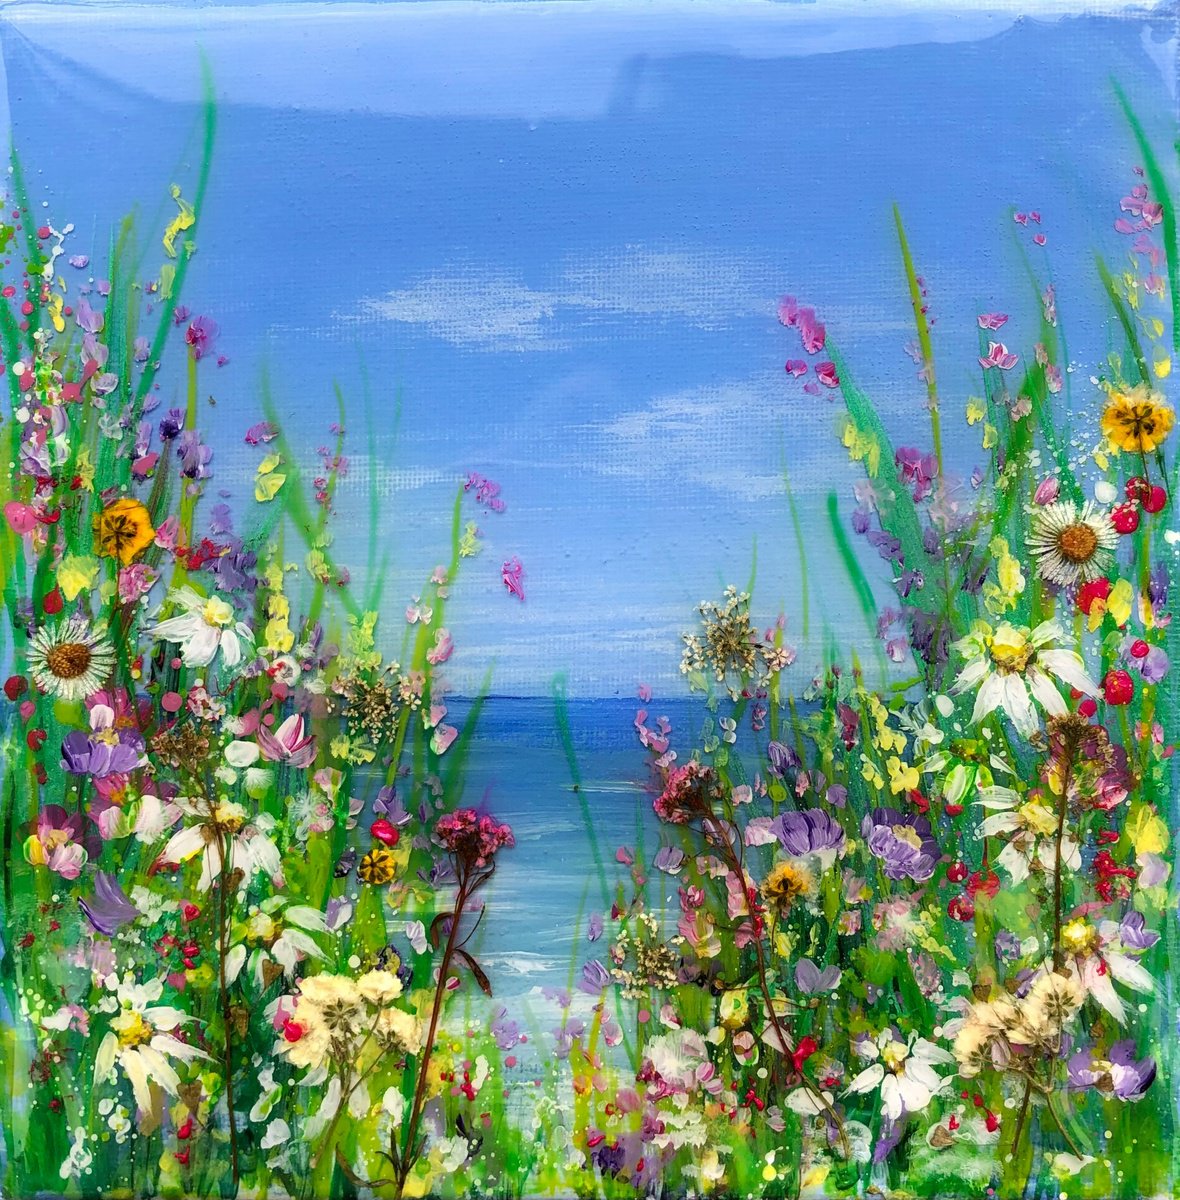 Hidden Flowers by Jill Aspin